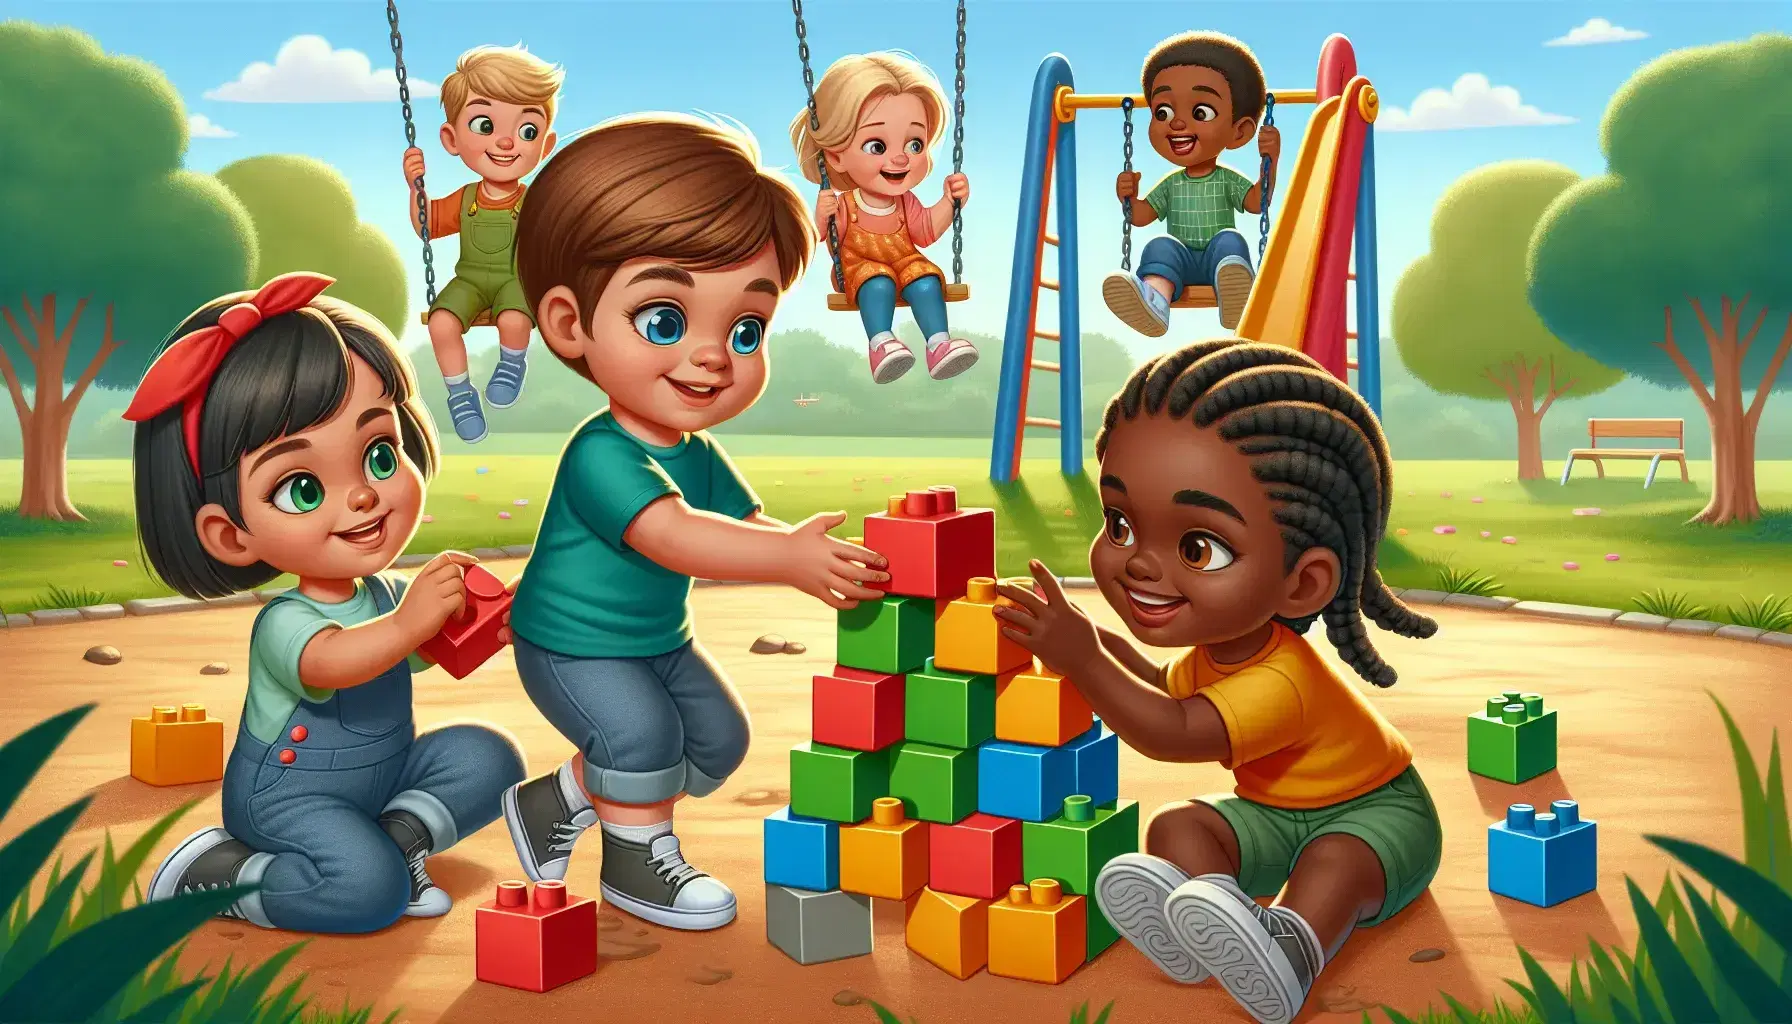 Niños de diversas etnias jugando en un parque, construyendo una torre de bloques y balanceándose en un día soleado.